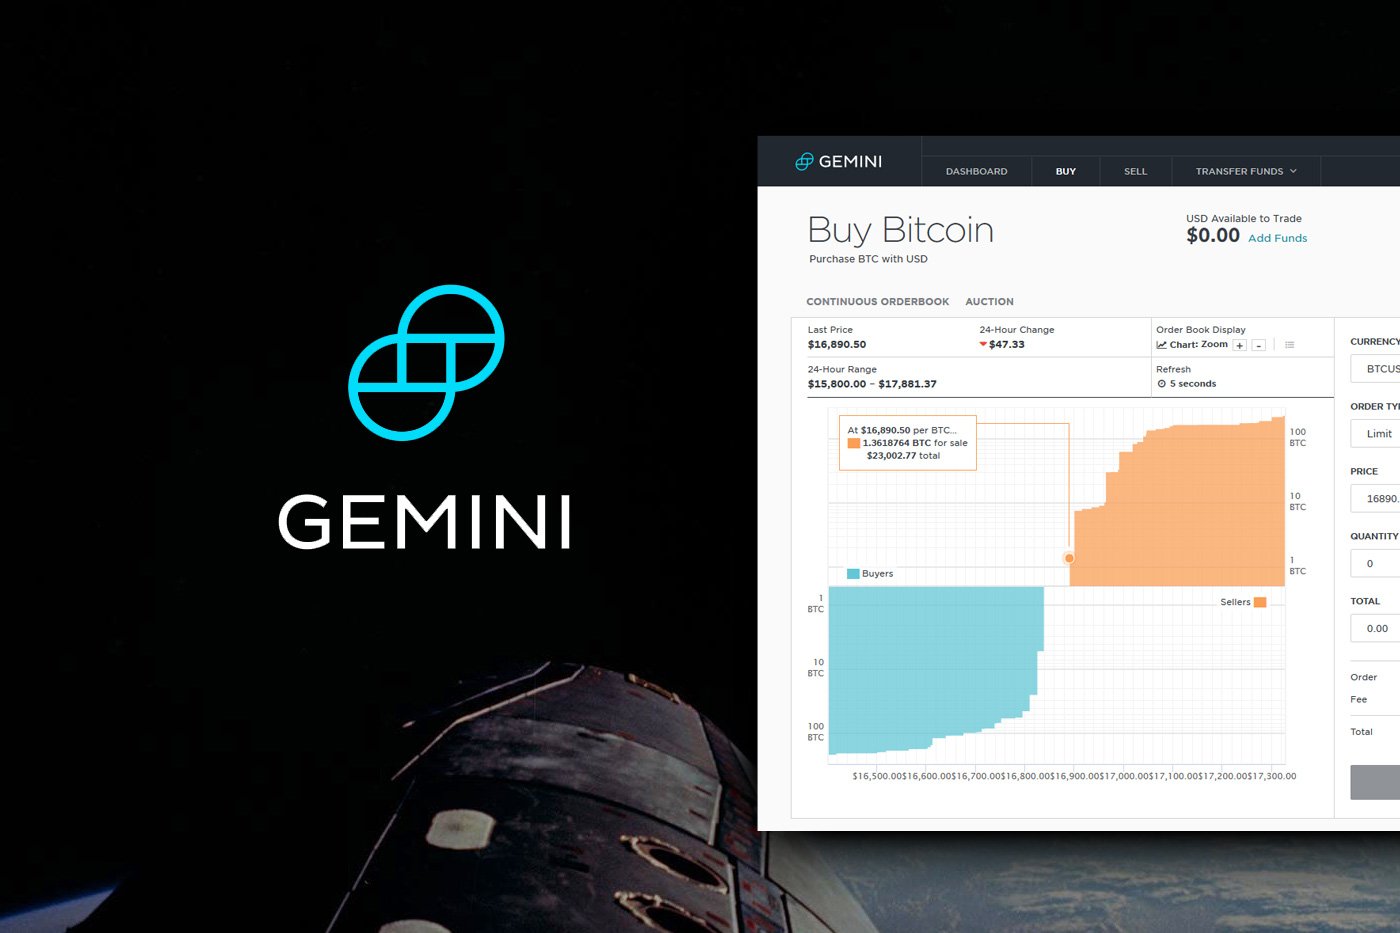 gemini crypto exchange review